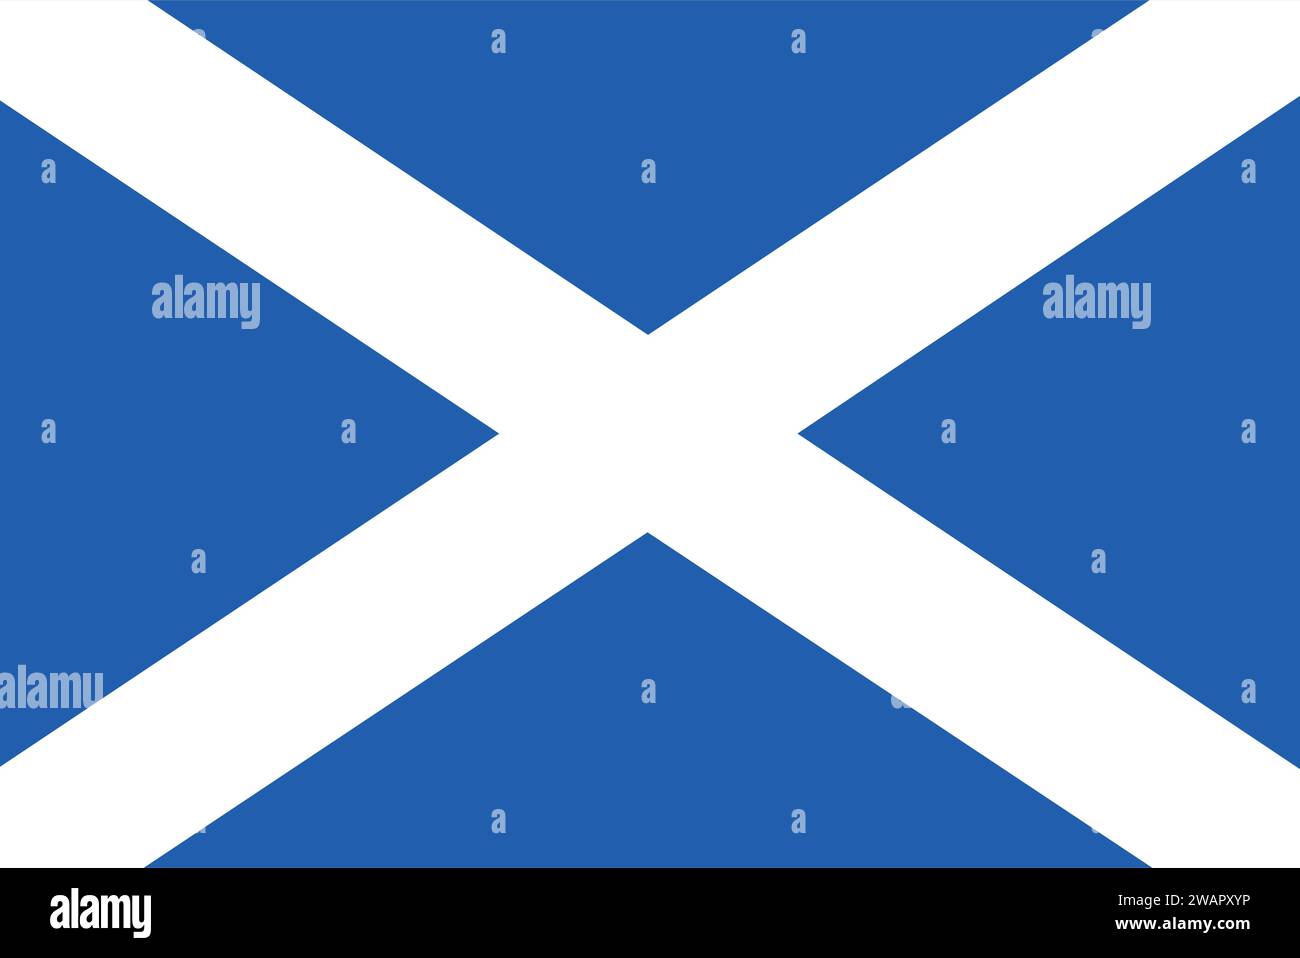 Hochdetaillierte Flagge von Schottland. Schottische Nationalflagge. Europa. 3D-Abbildung. Stock Vektor